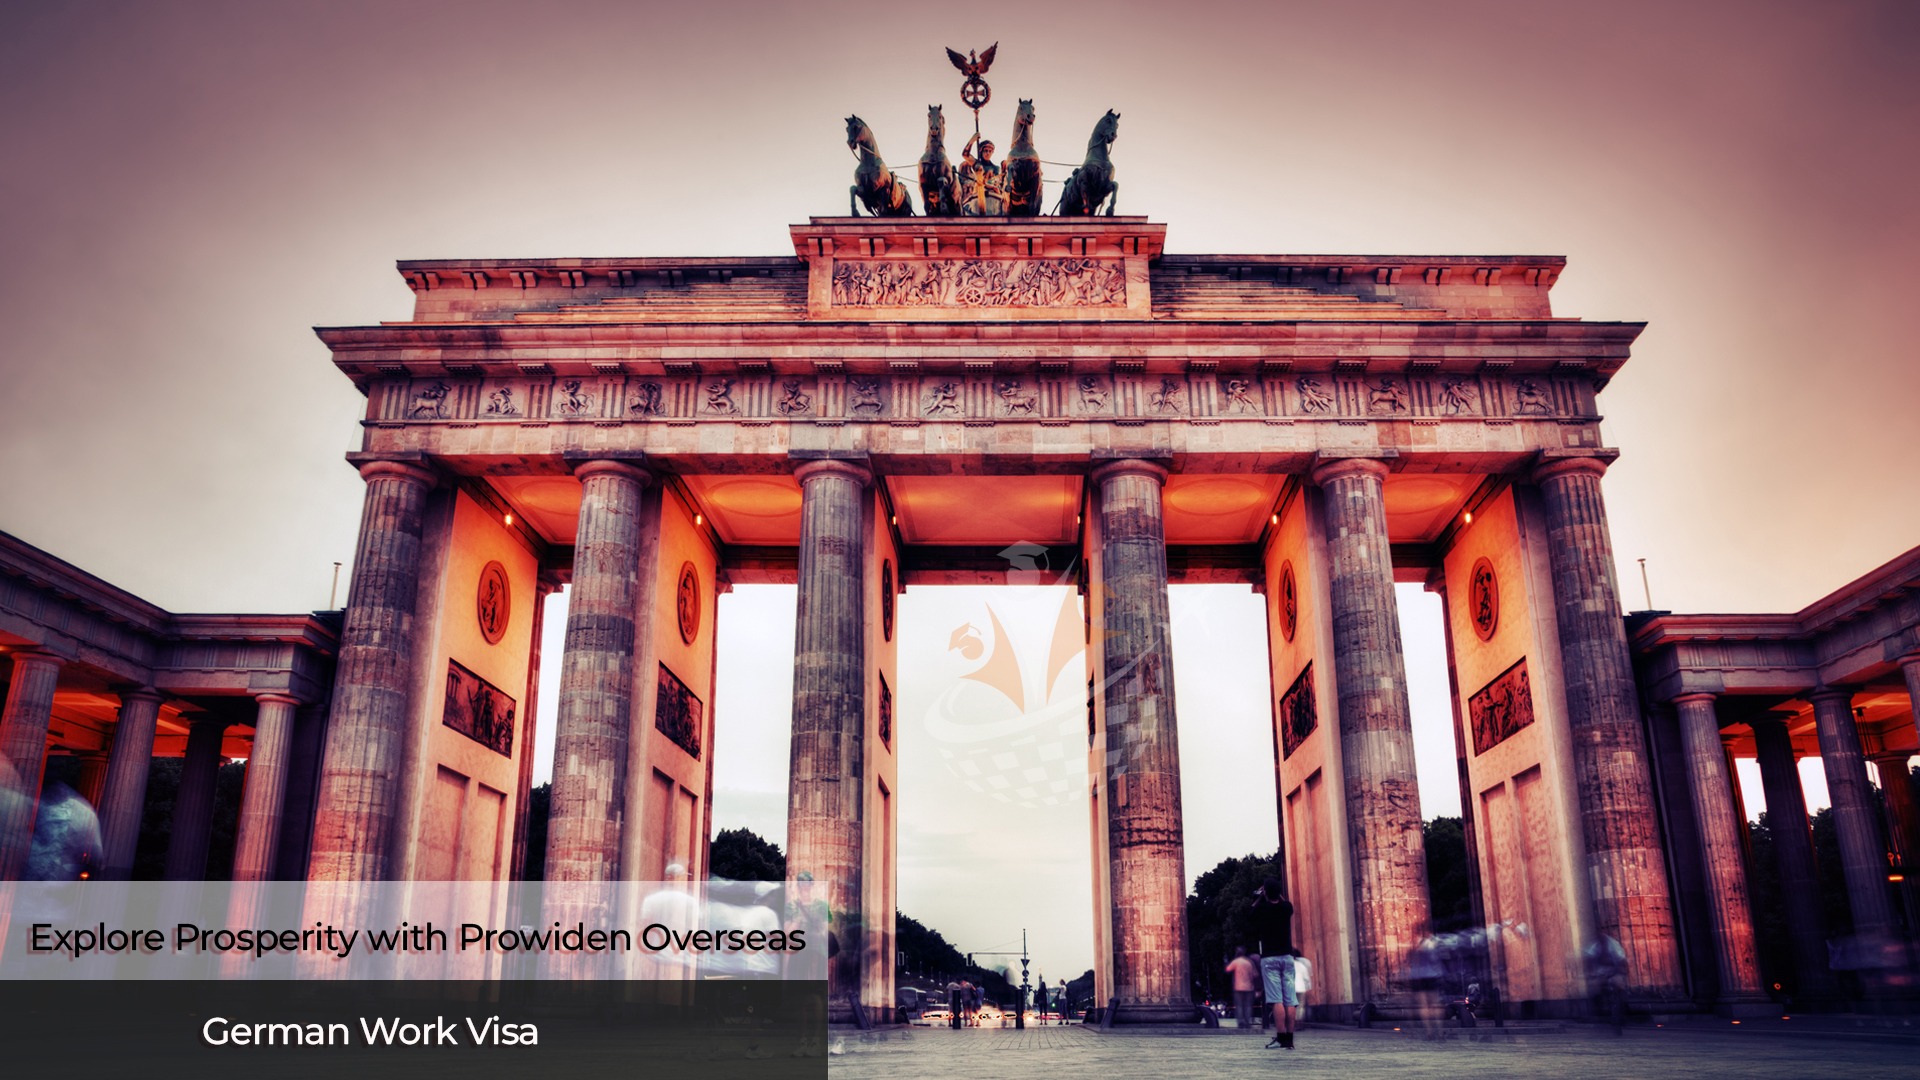 German Work Visa,Germany, Best German Work Visa Company, Prowiden Overseas